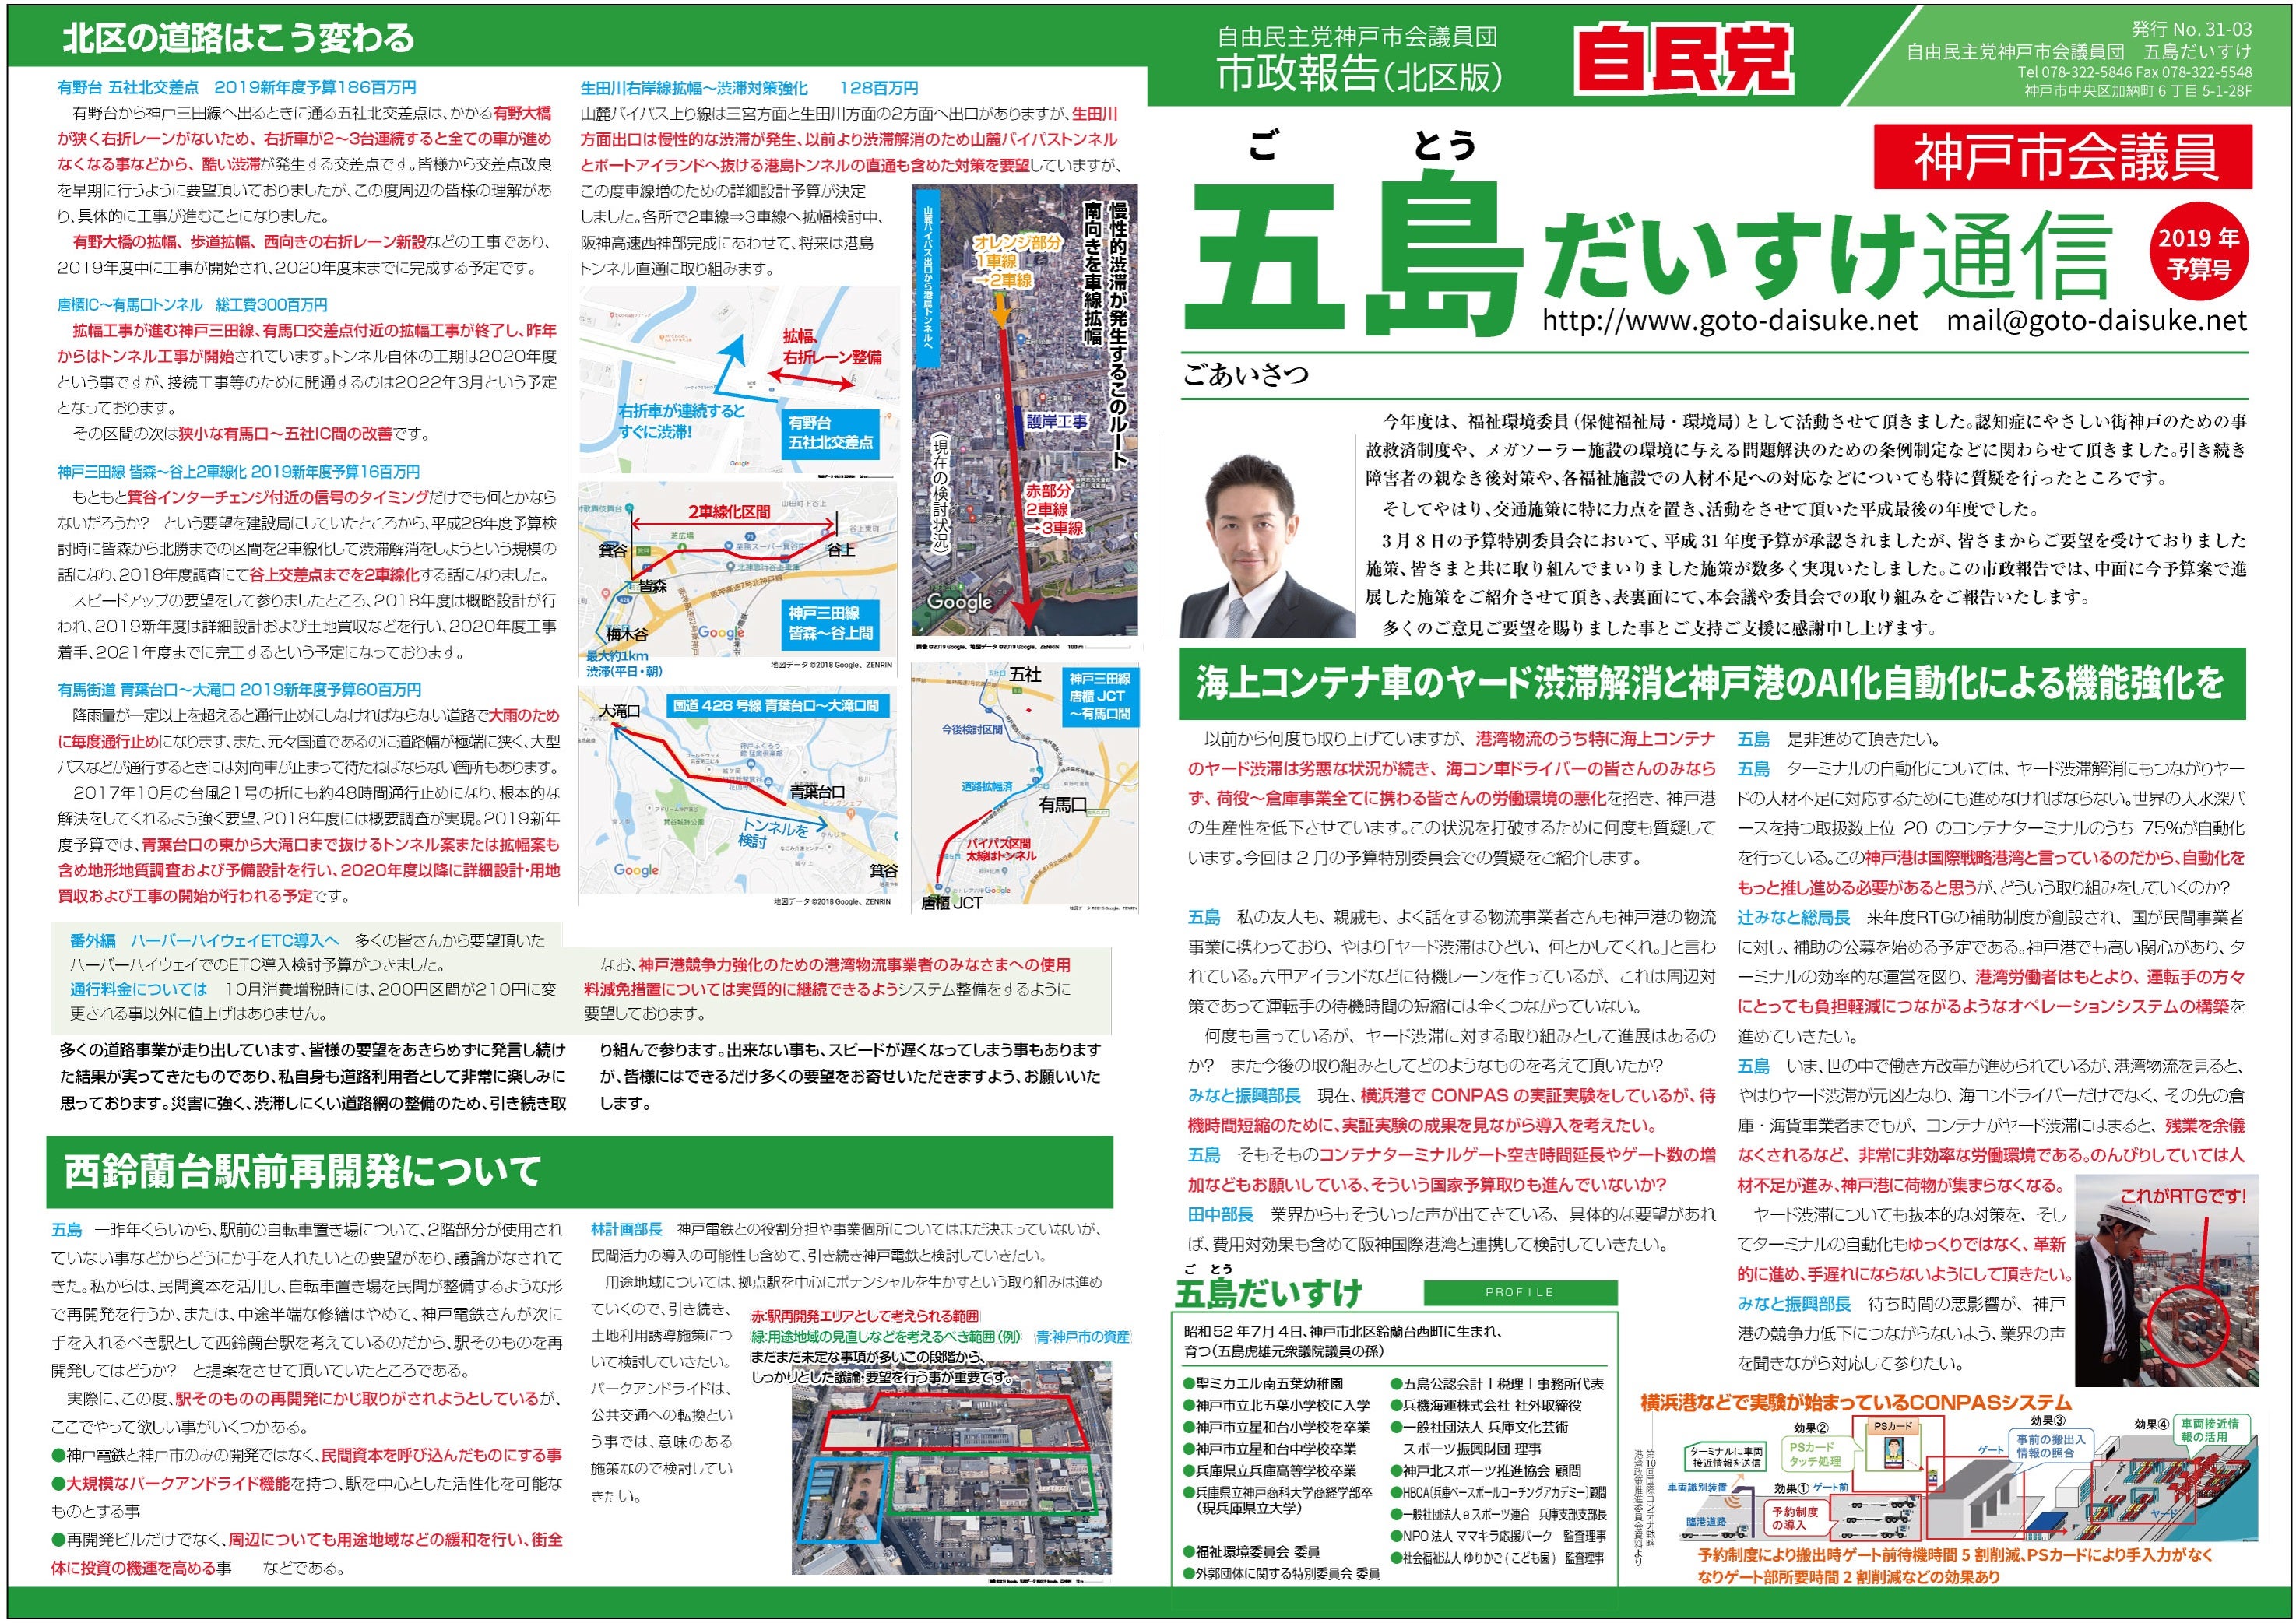 市政報告19予算特別号 発行しました 神戸市会議員 五島だいすけ 神戸市会議員 五島だいすけのブログ 神戸市北区選出